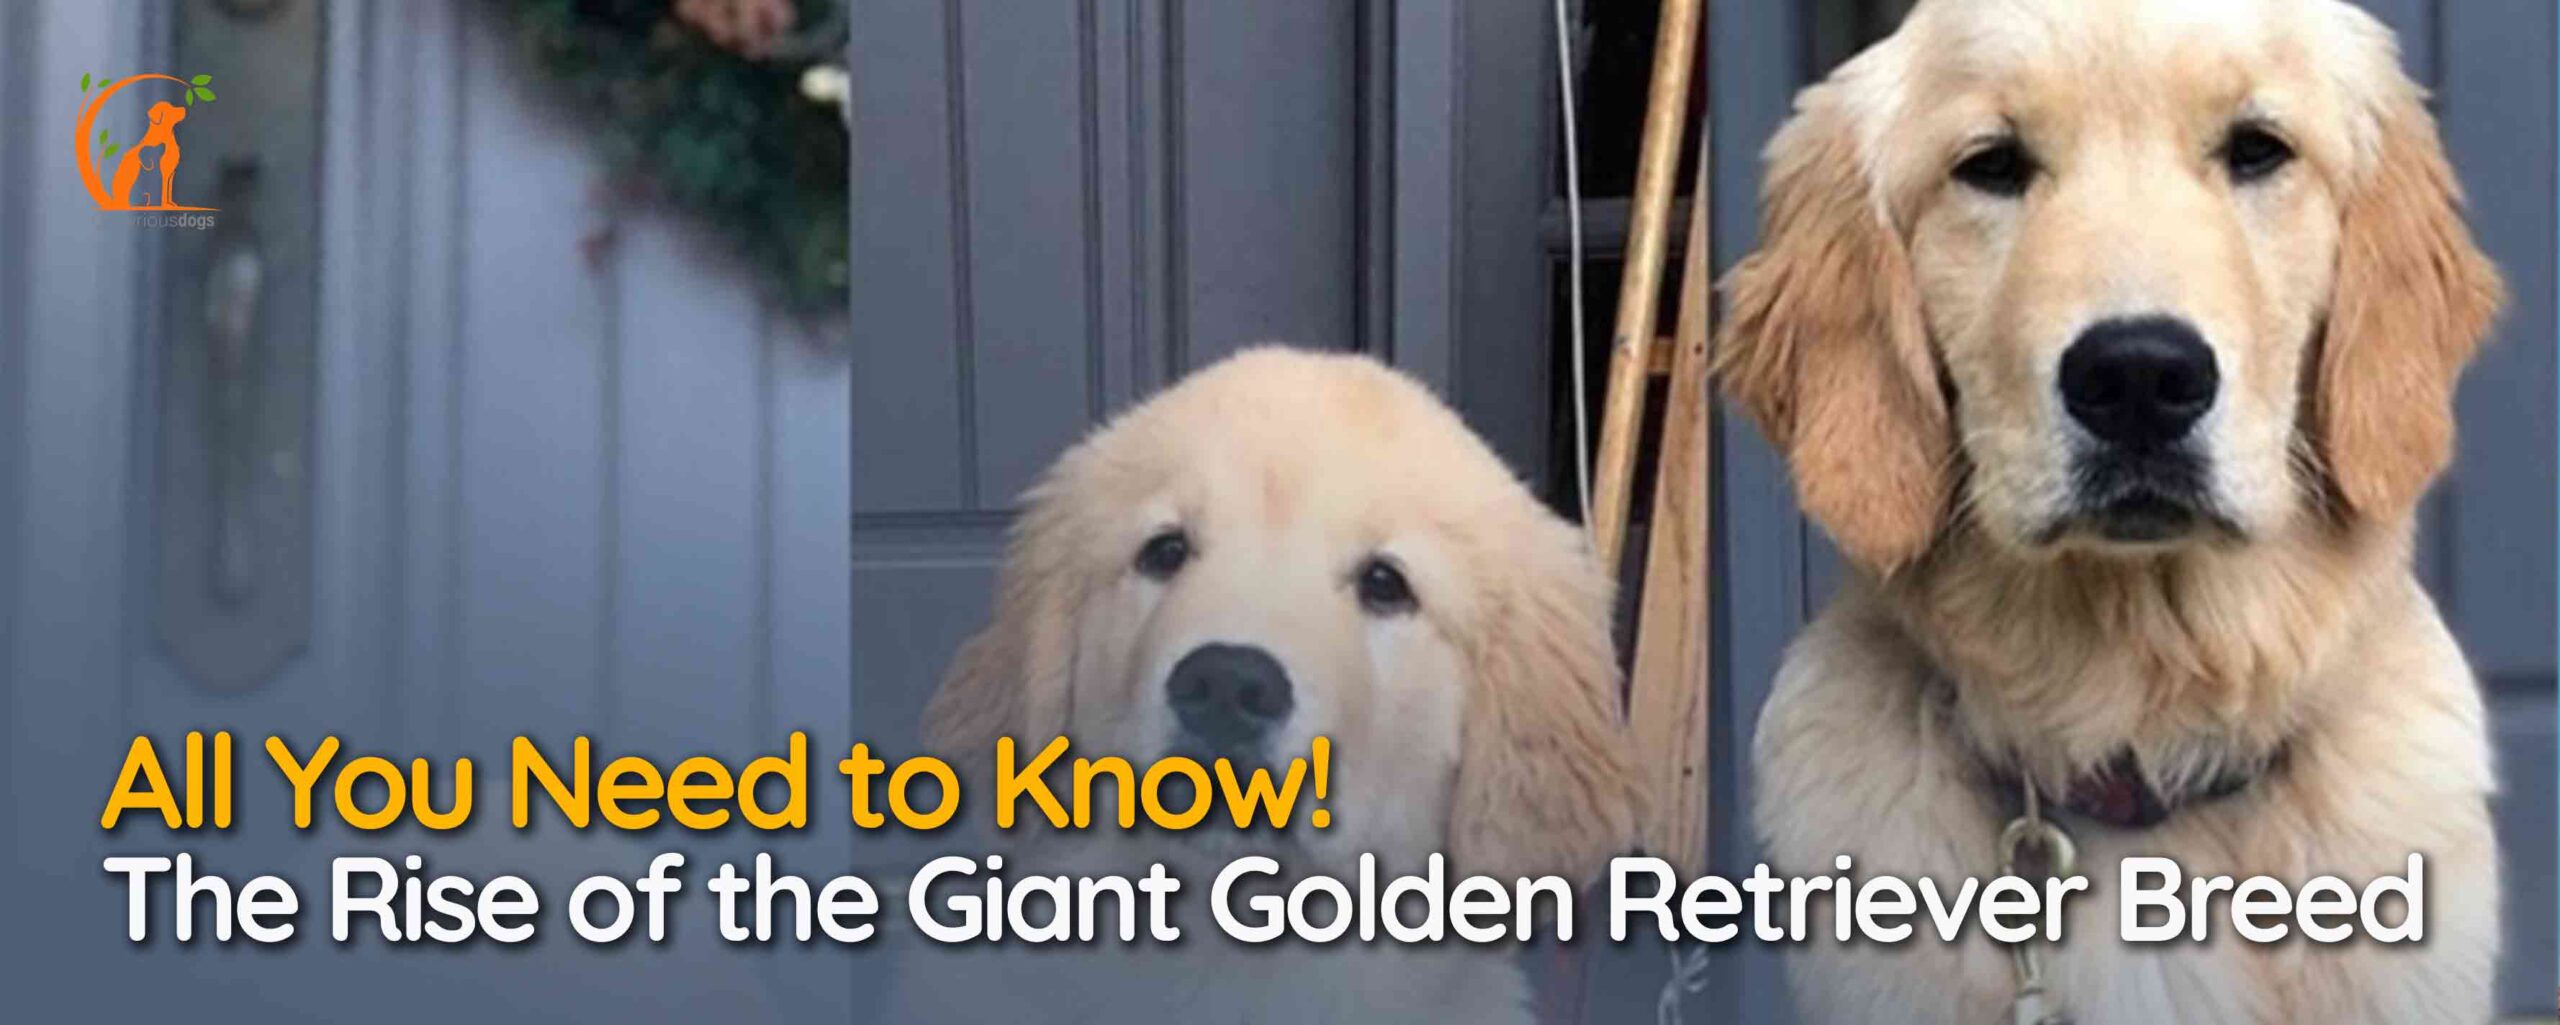 Giant Golden Retriever Breed